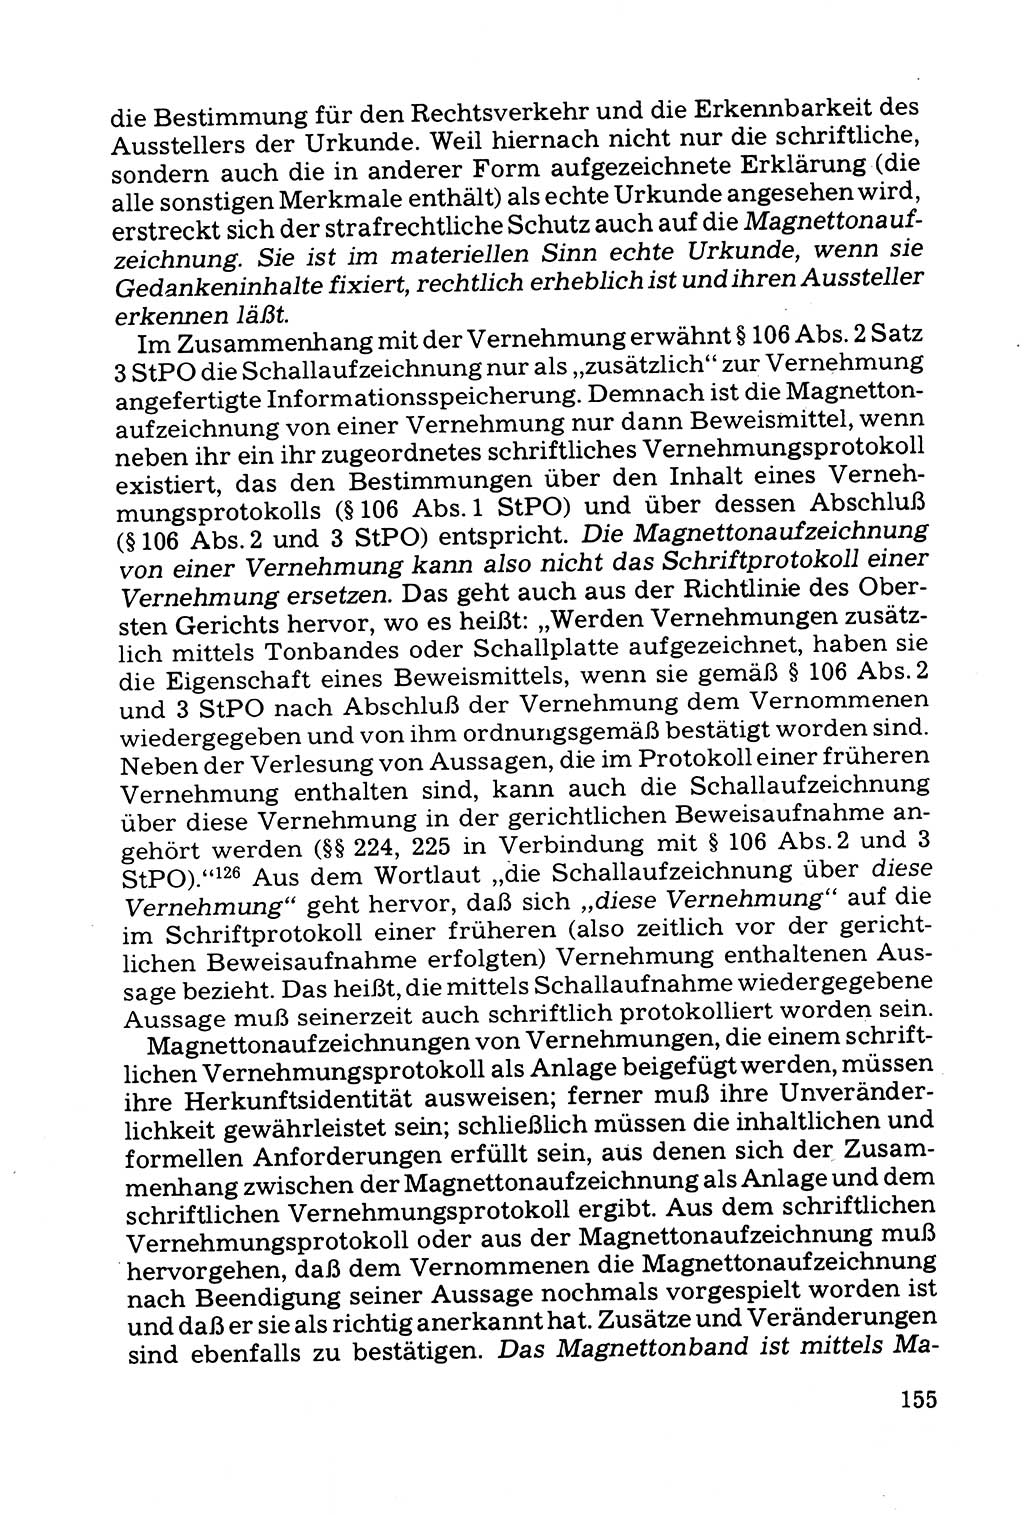 Grundfragen der Beweisführung im Ermittlungsverfahren [Deutsche Demokratische Republik (DDR)] 1980, Seite 155 (Bws.-Fhrg. EV DDR 1980, S. 155)